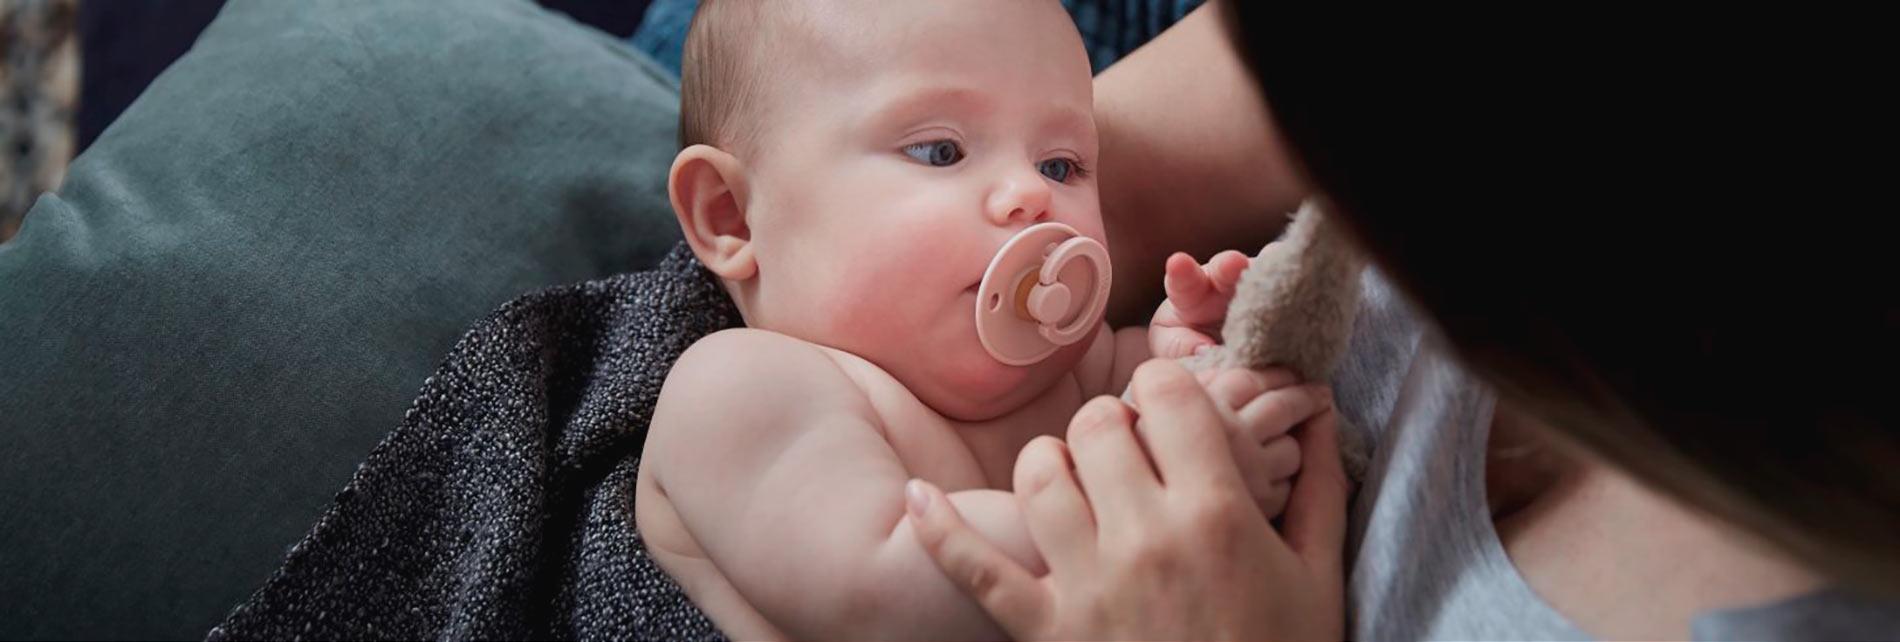 Madre con niño concebido con la ayuda de Cryos después de un tratamiento de fertilidad con esperma de donante de alta calidad